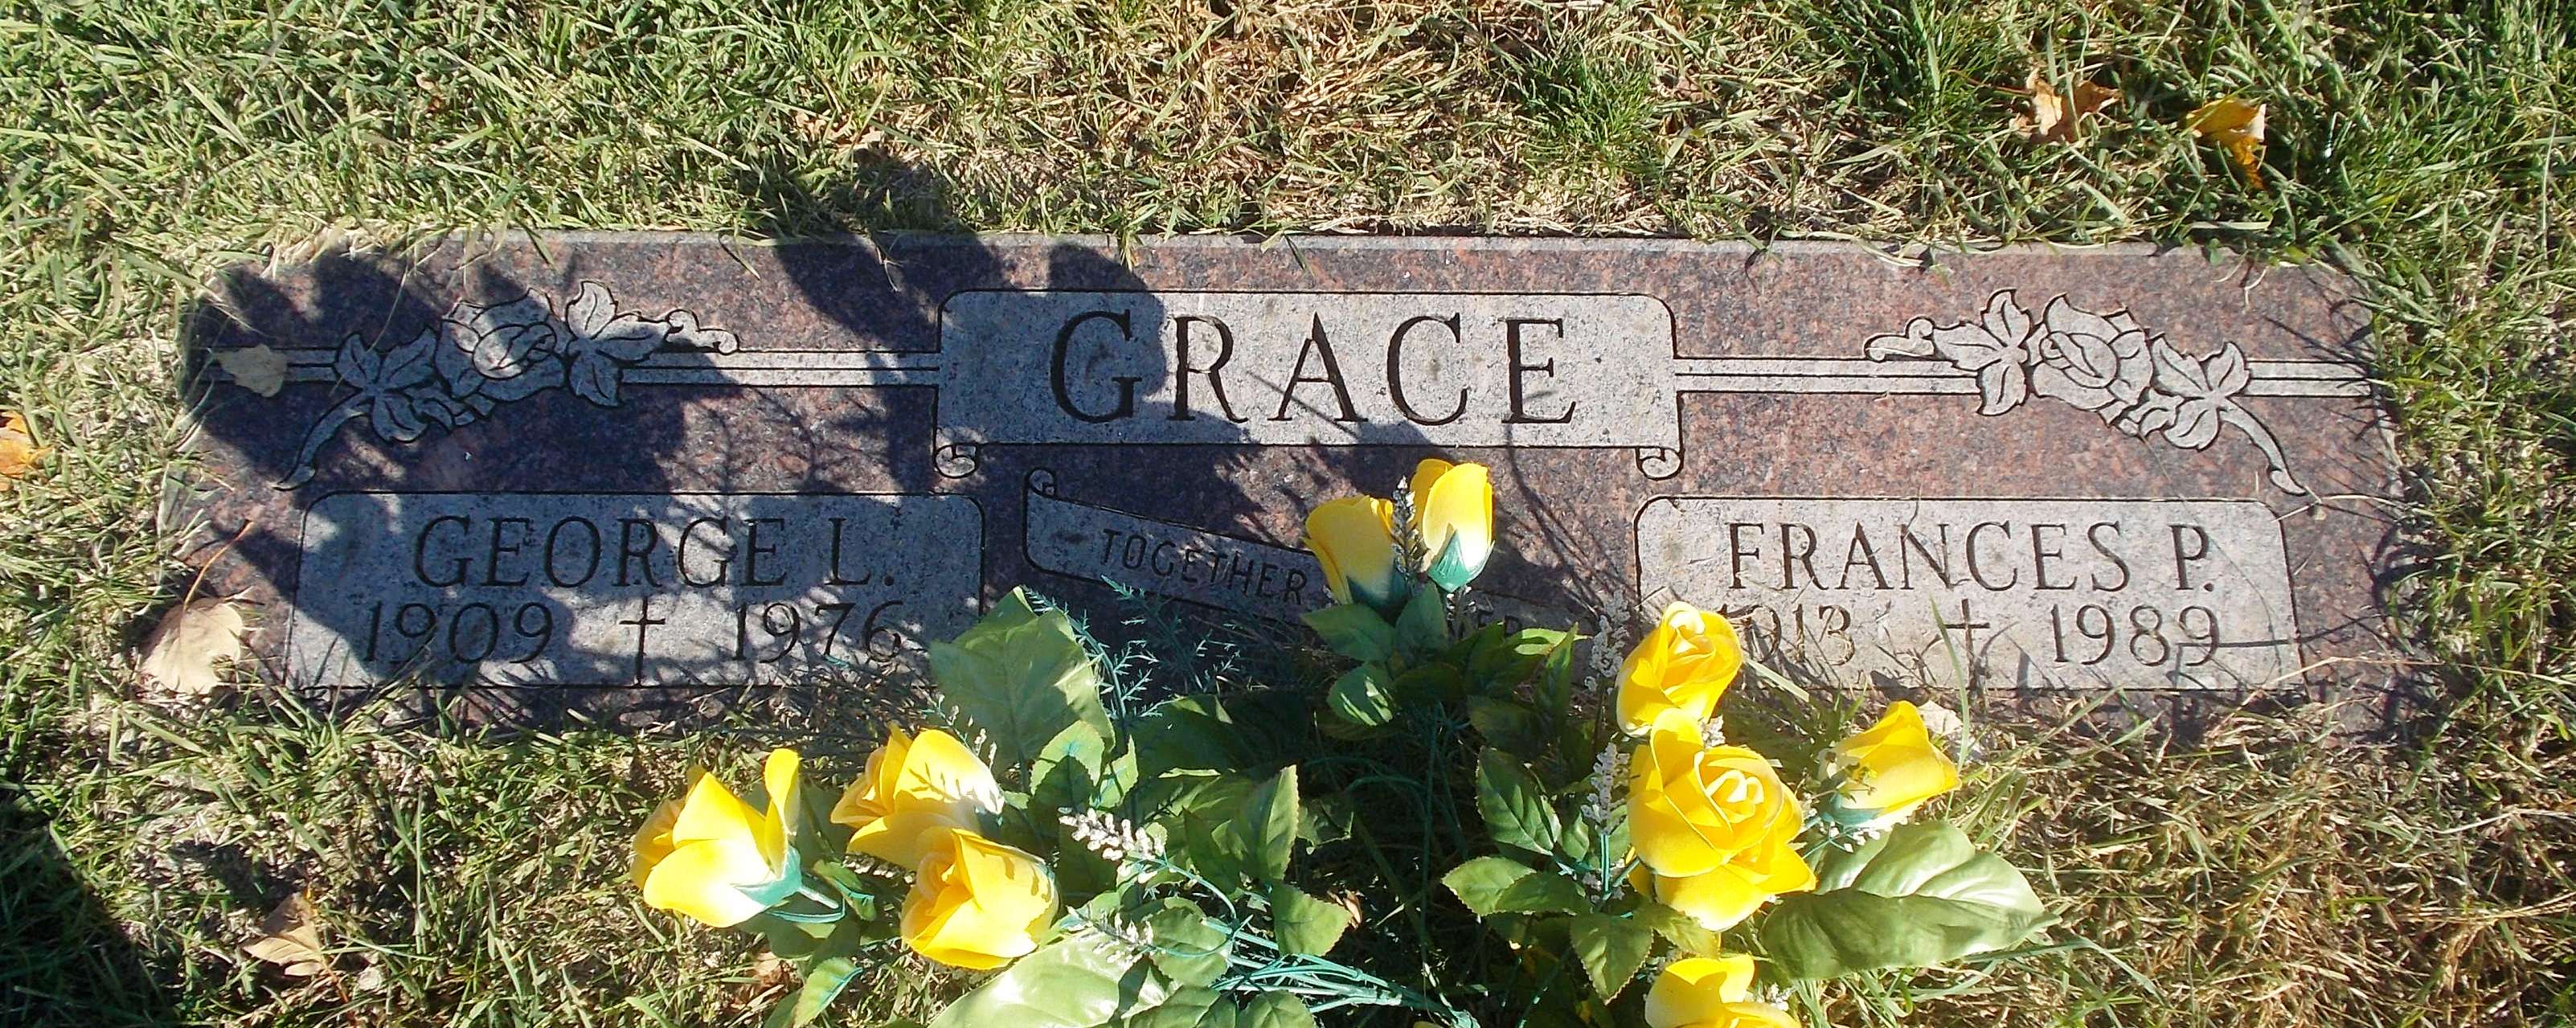 Frances P Grace